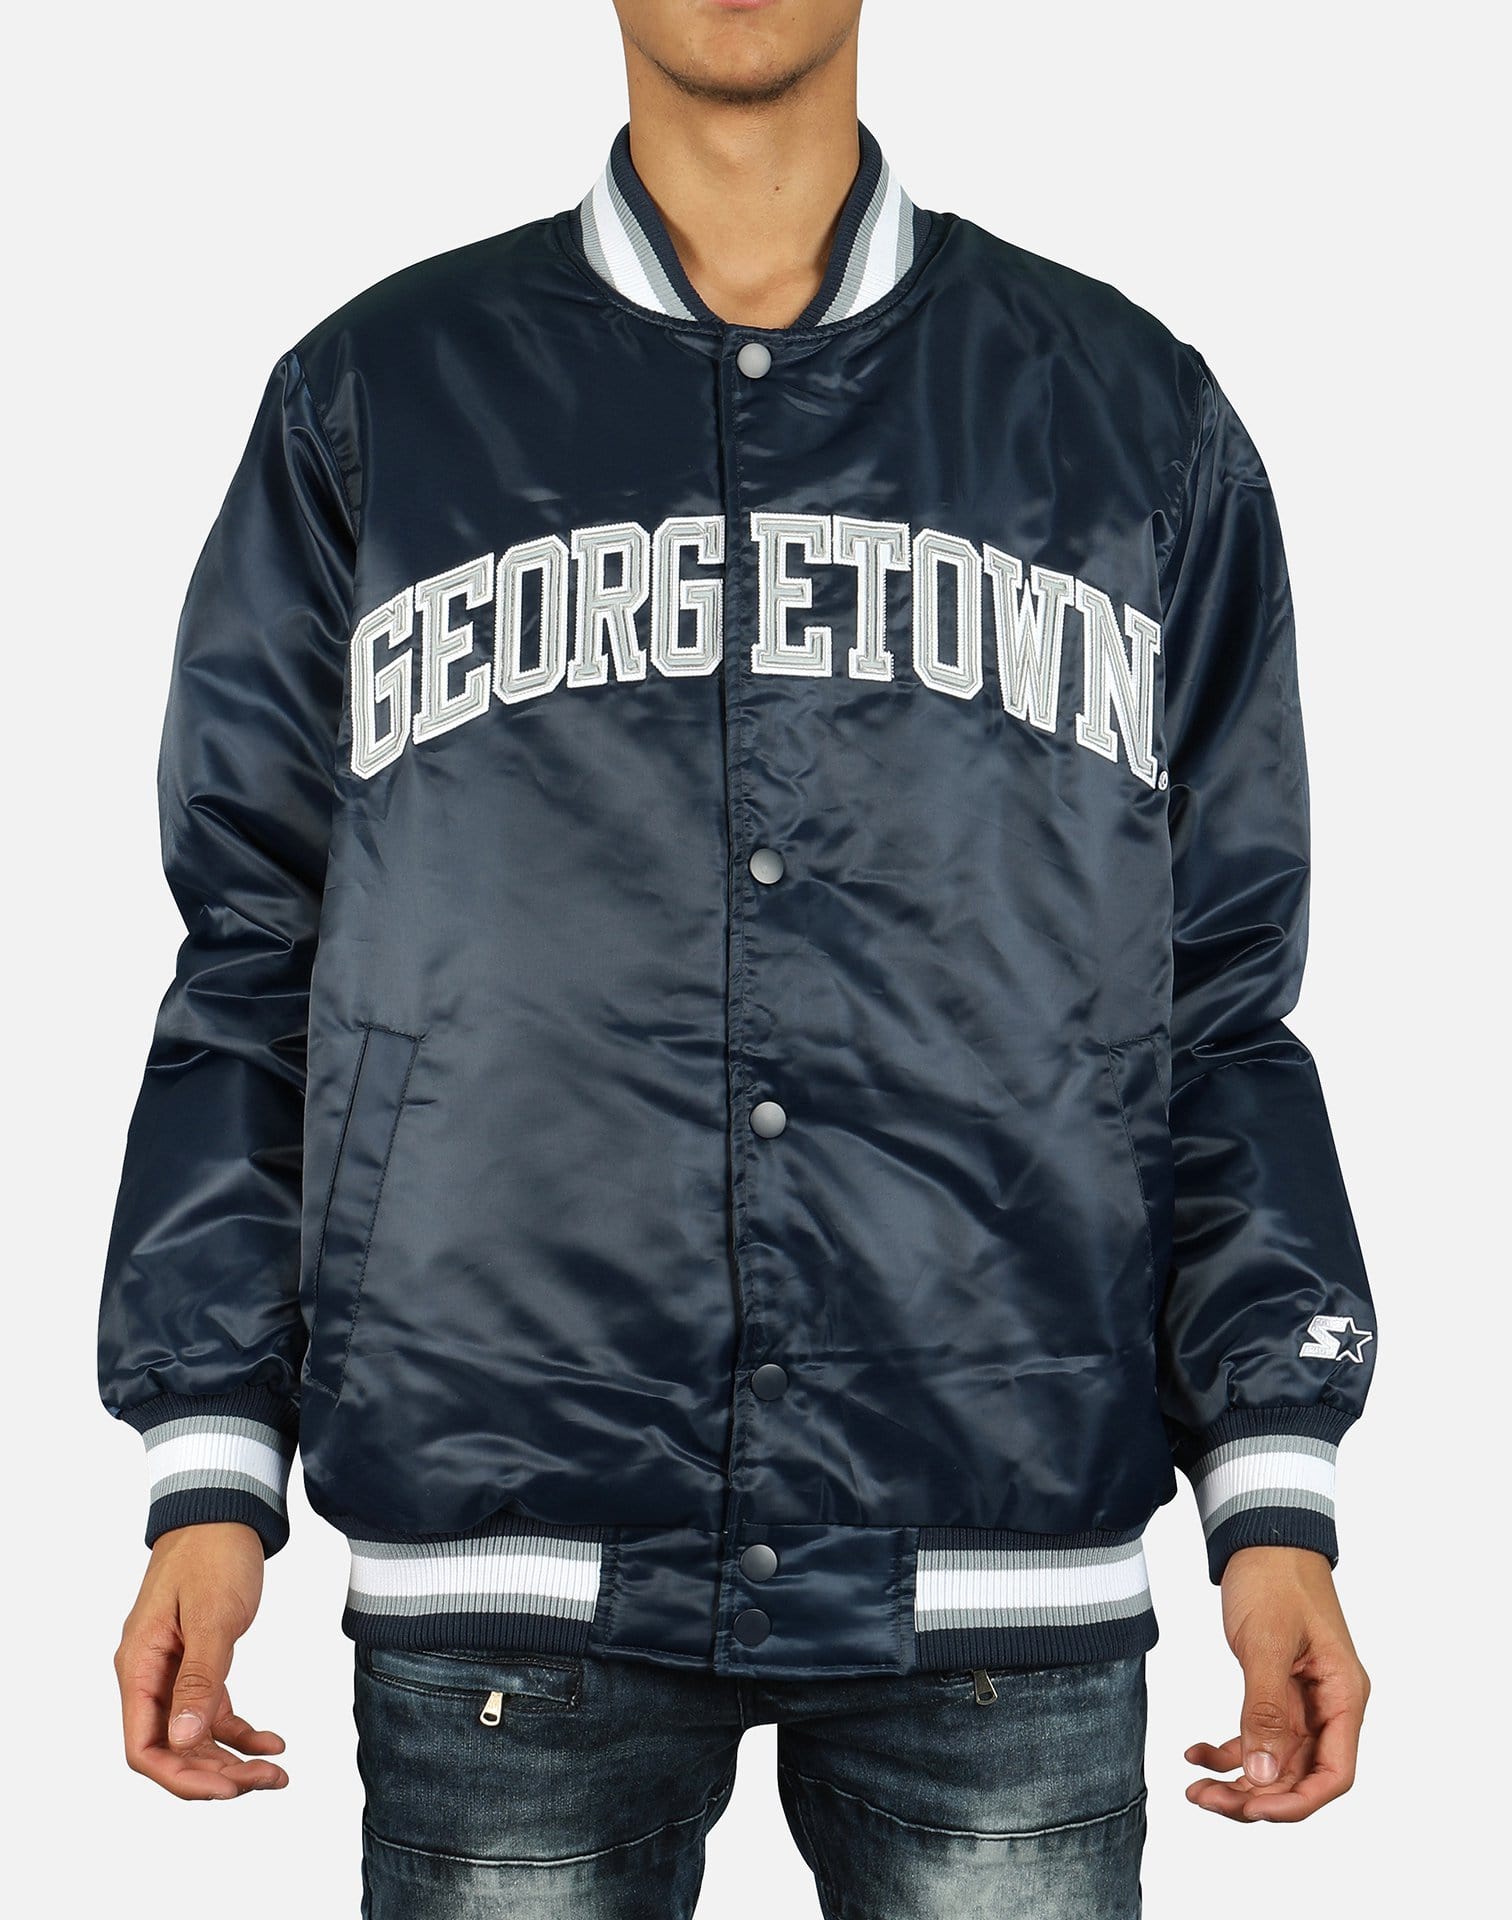 Starter Georgetown Hoyas Satin Bomber Jacket